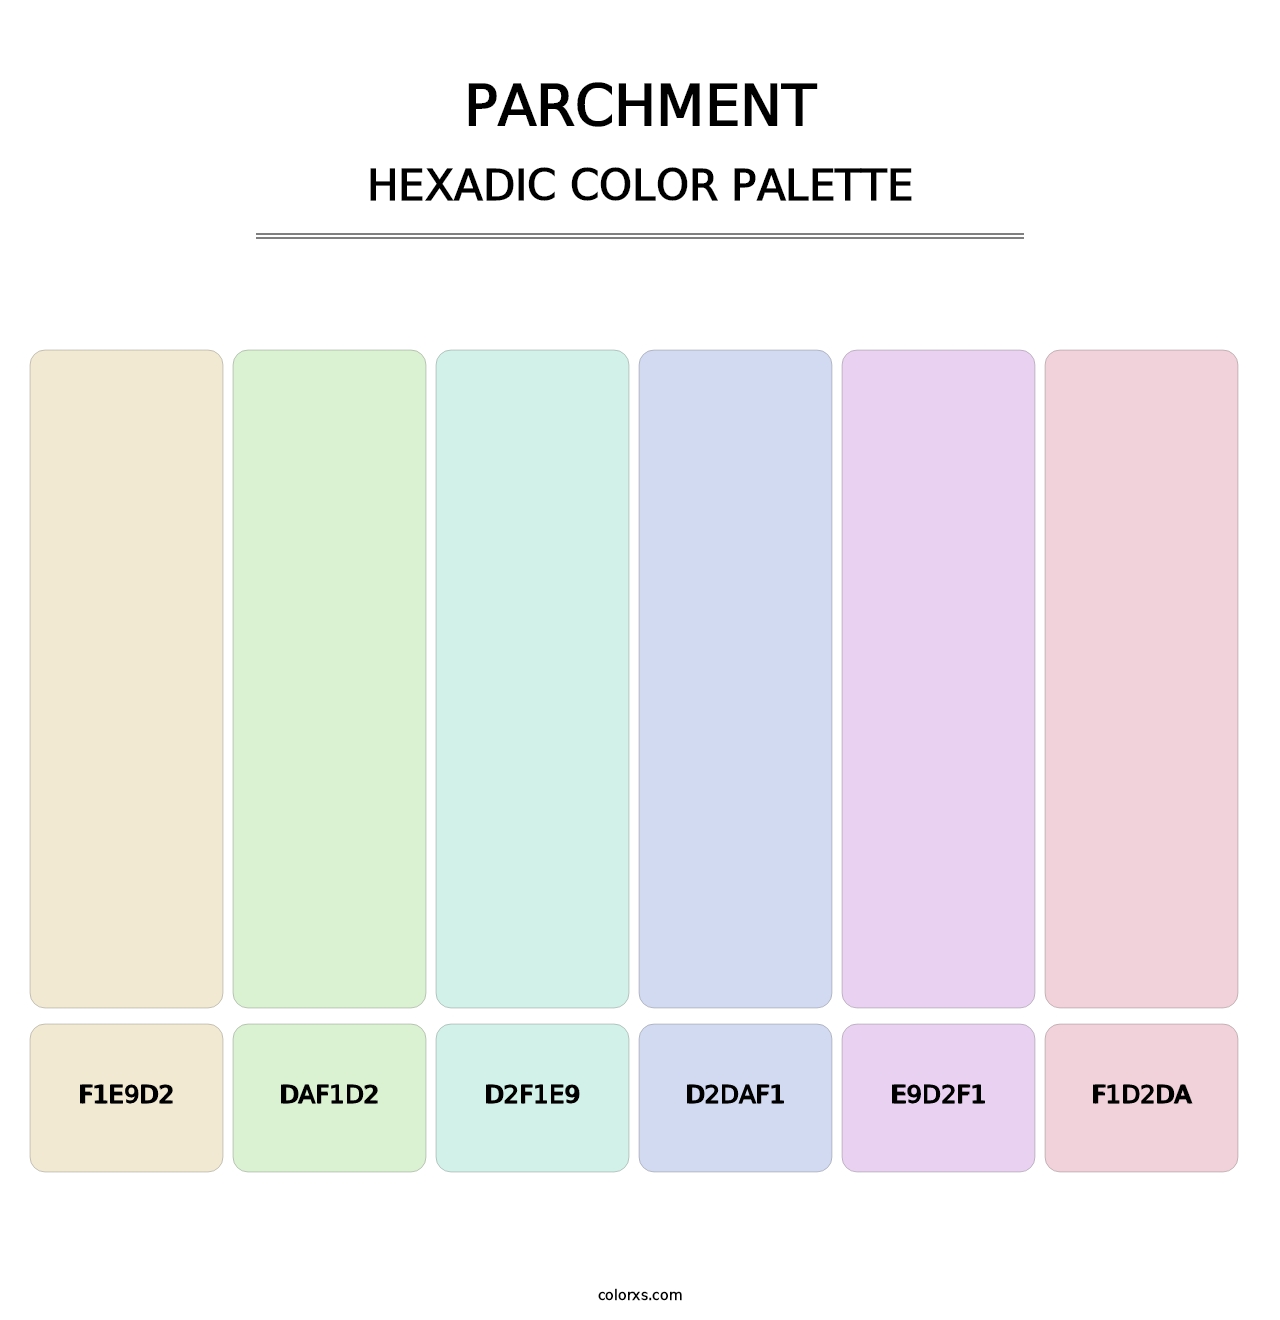 Parchment - Hexadic Color Palette